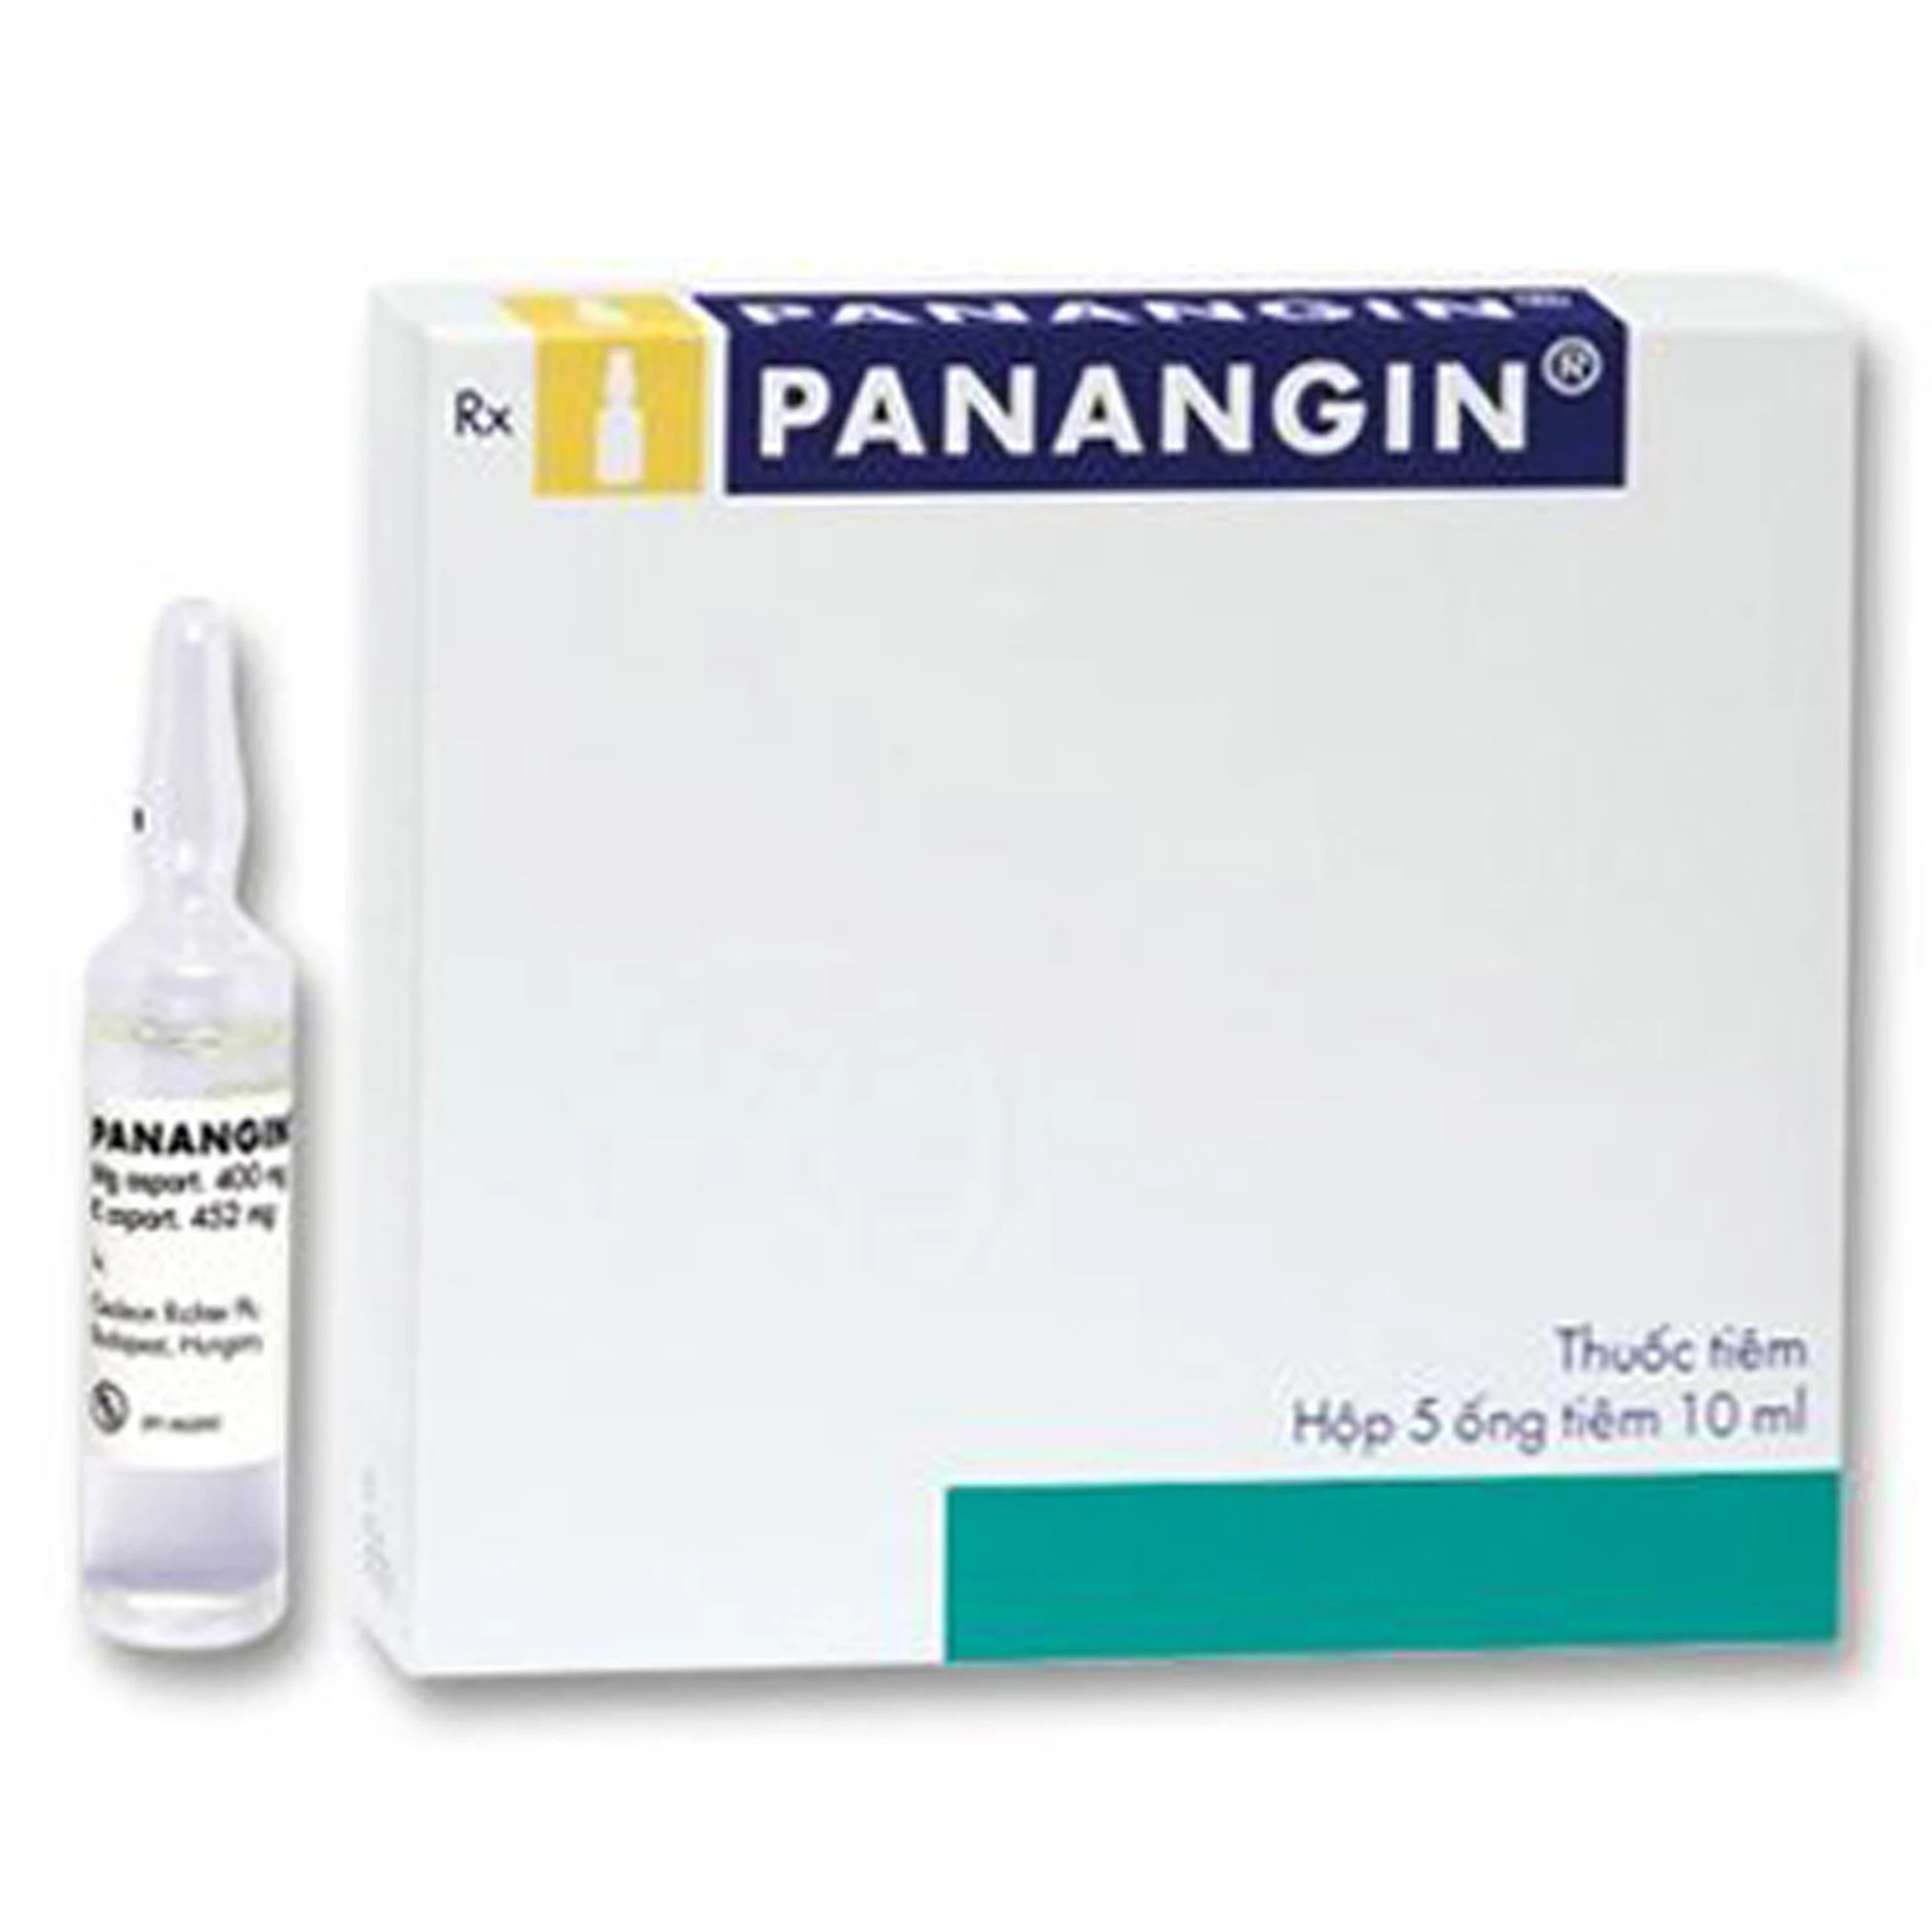 Thuốc tiêm Panangin Gedeon điều trị suy tim, nhồi máu cơ tim, loạn nhịp tim (5 ống x 10ml)